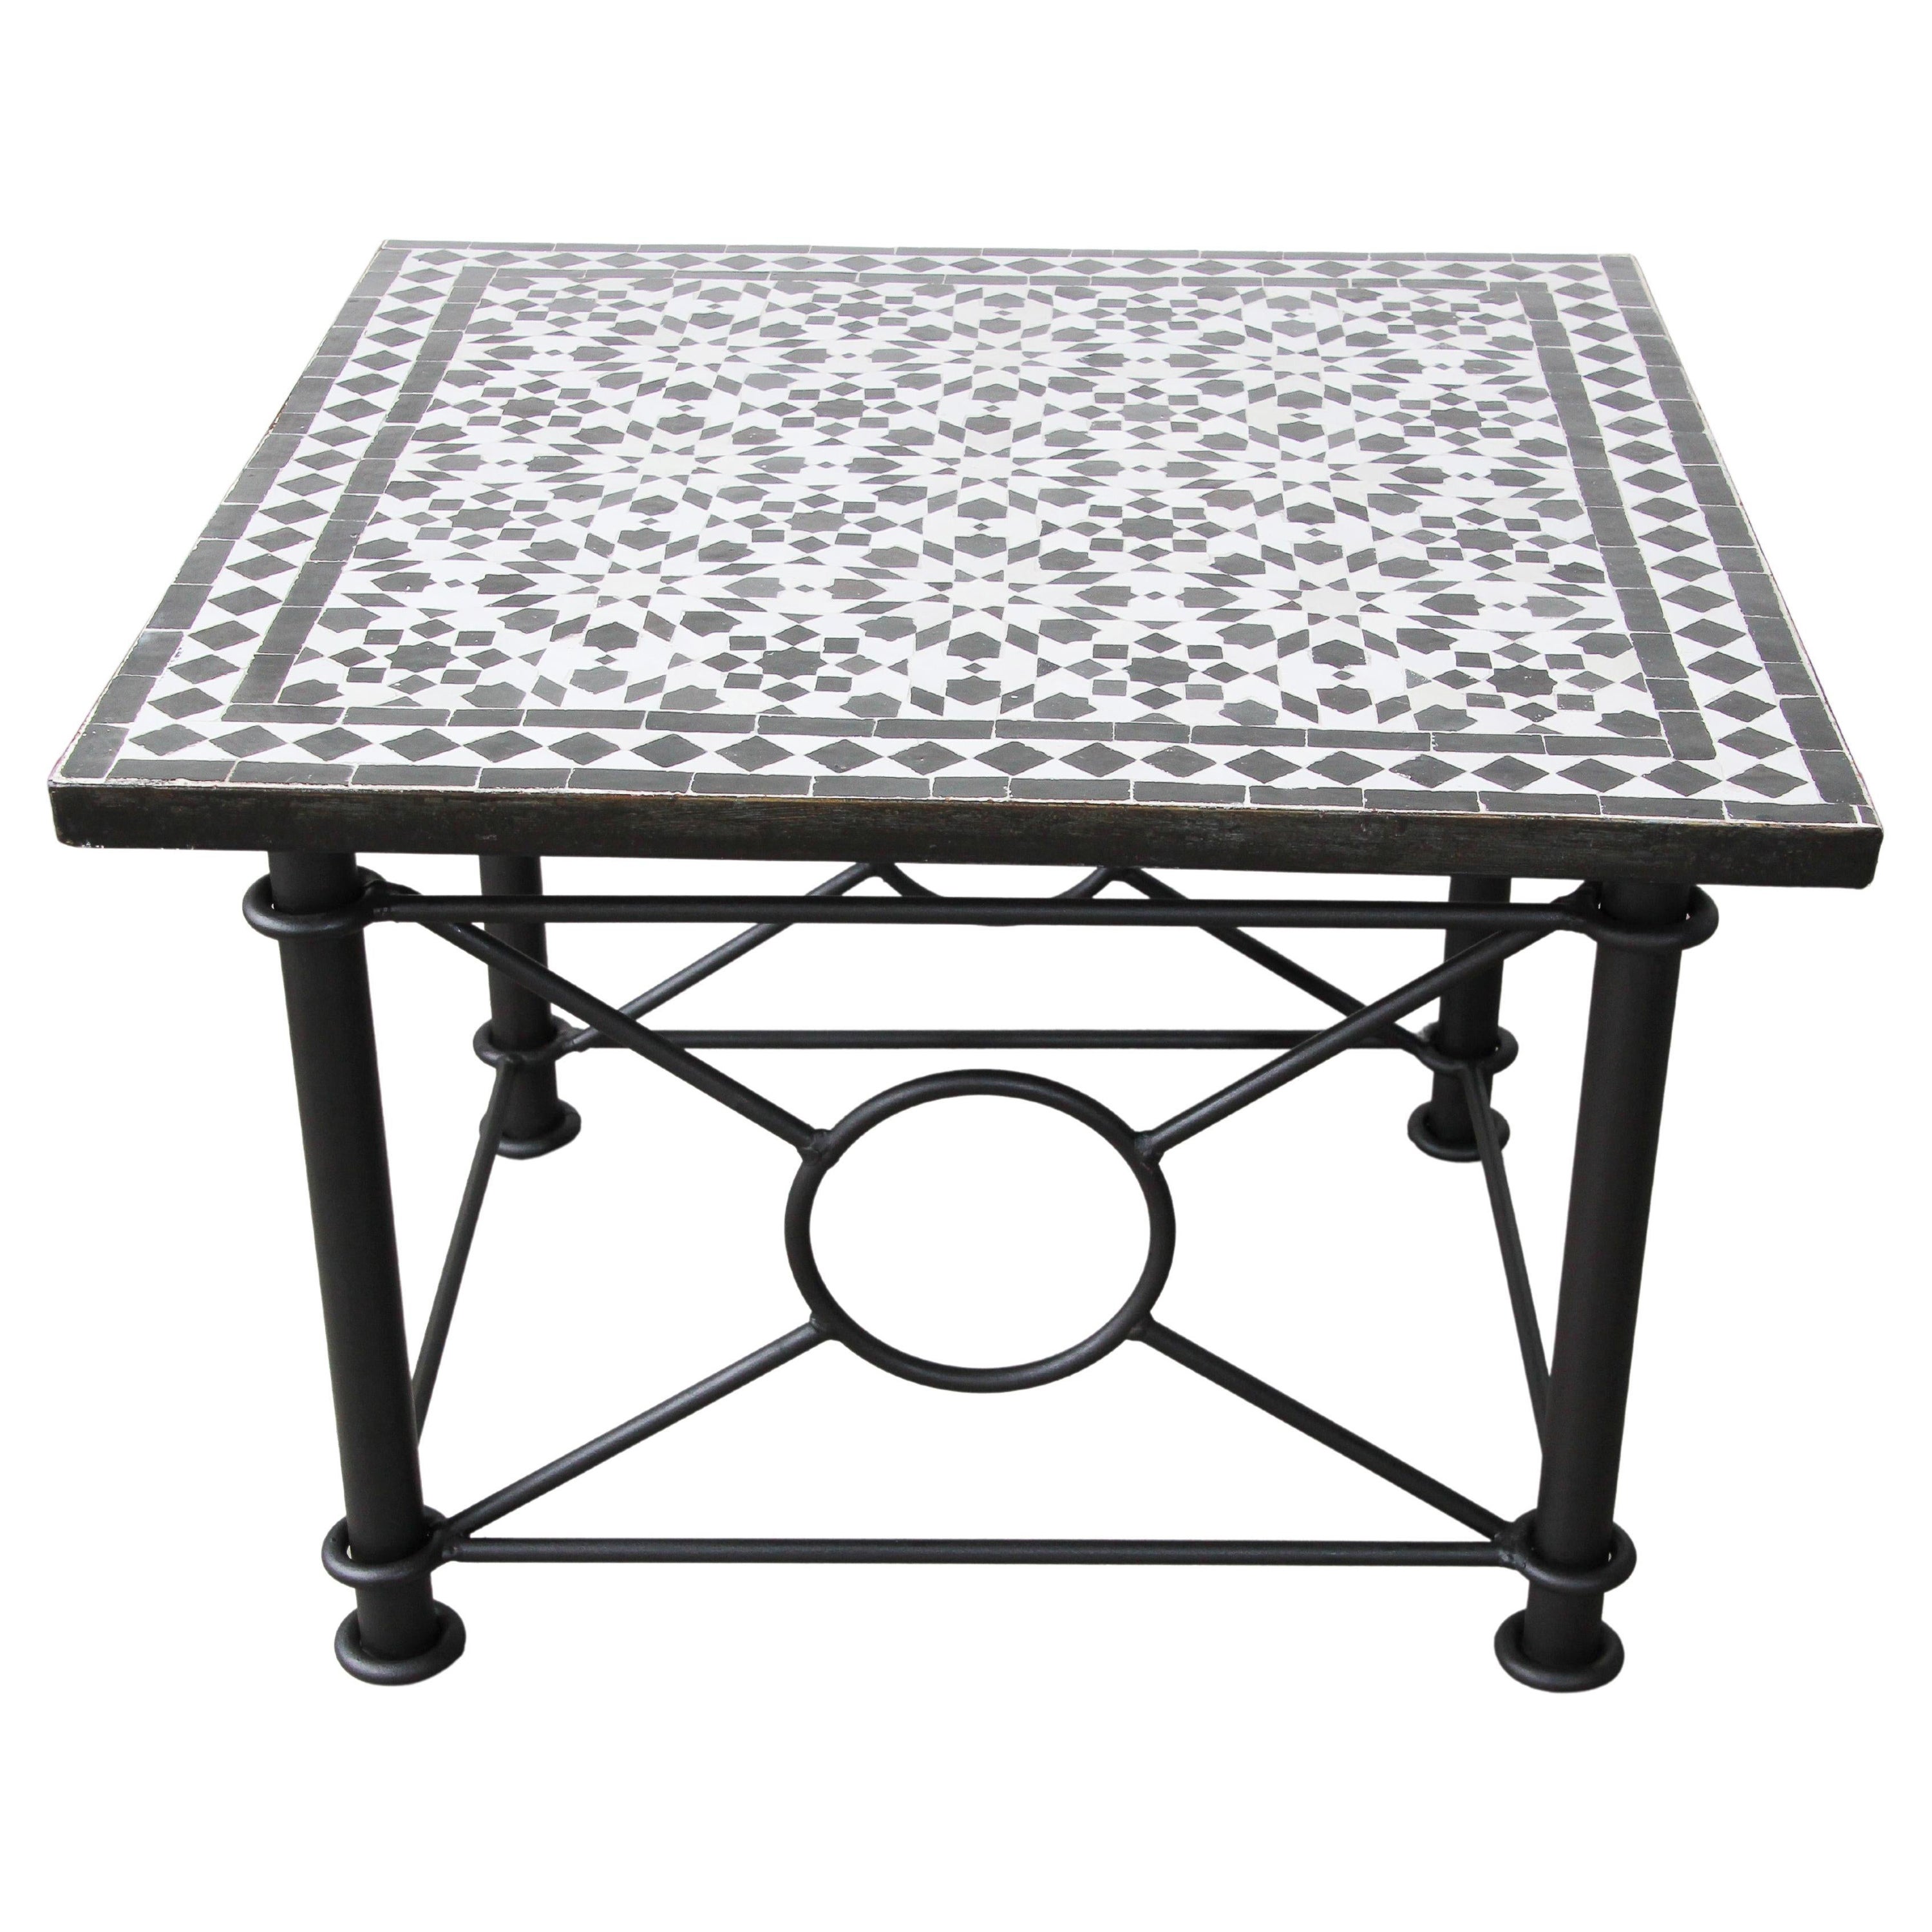 Table basse marocaine Fez en mosaïque de carreaux noirs et blancs